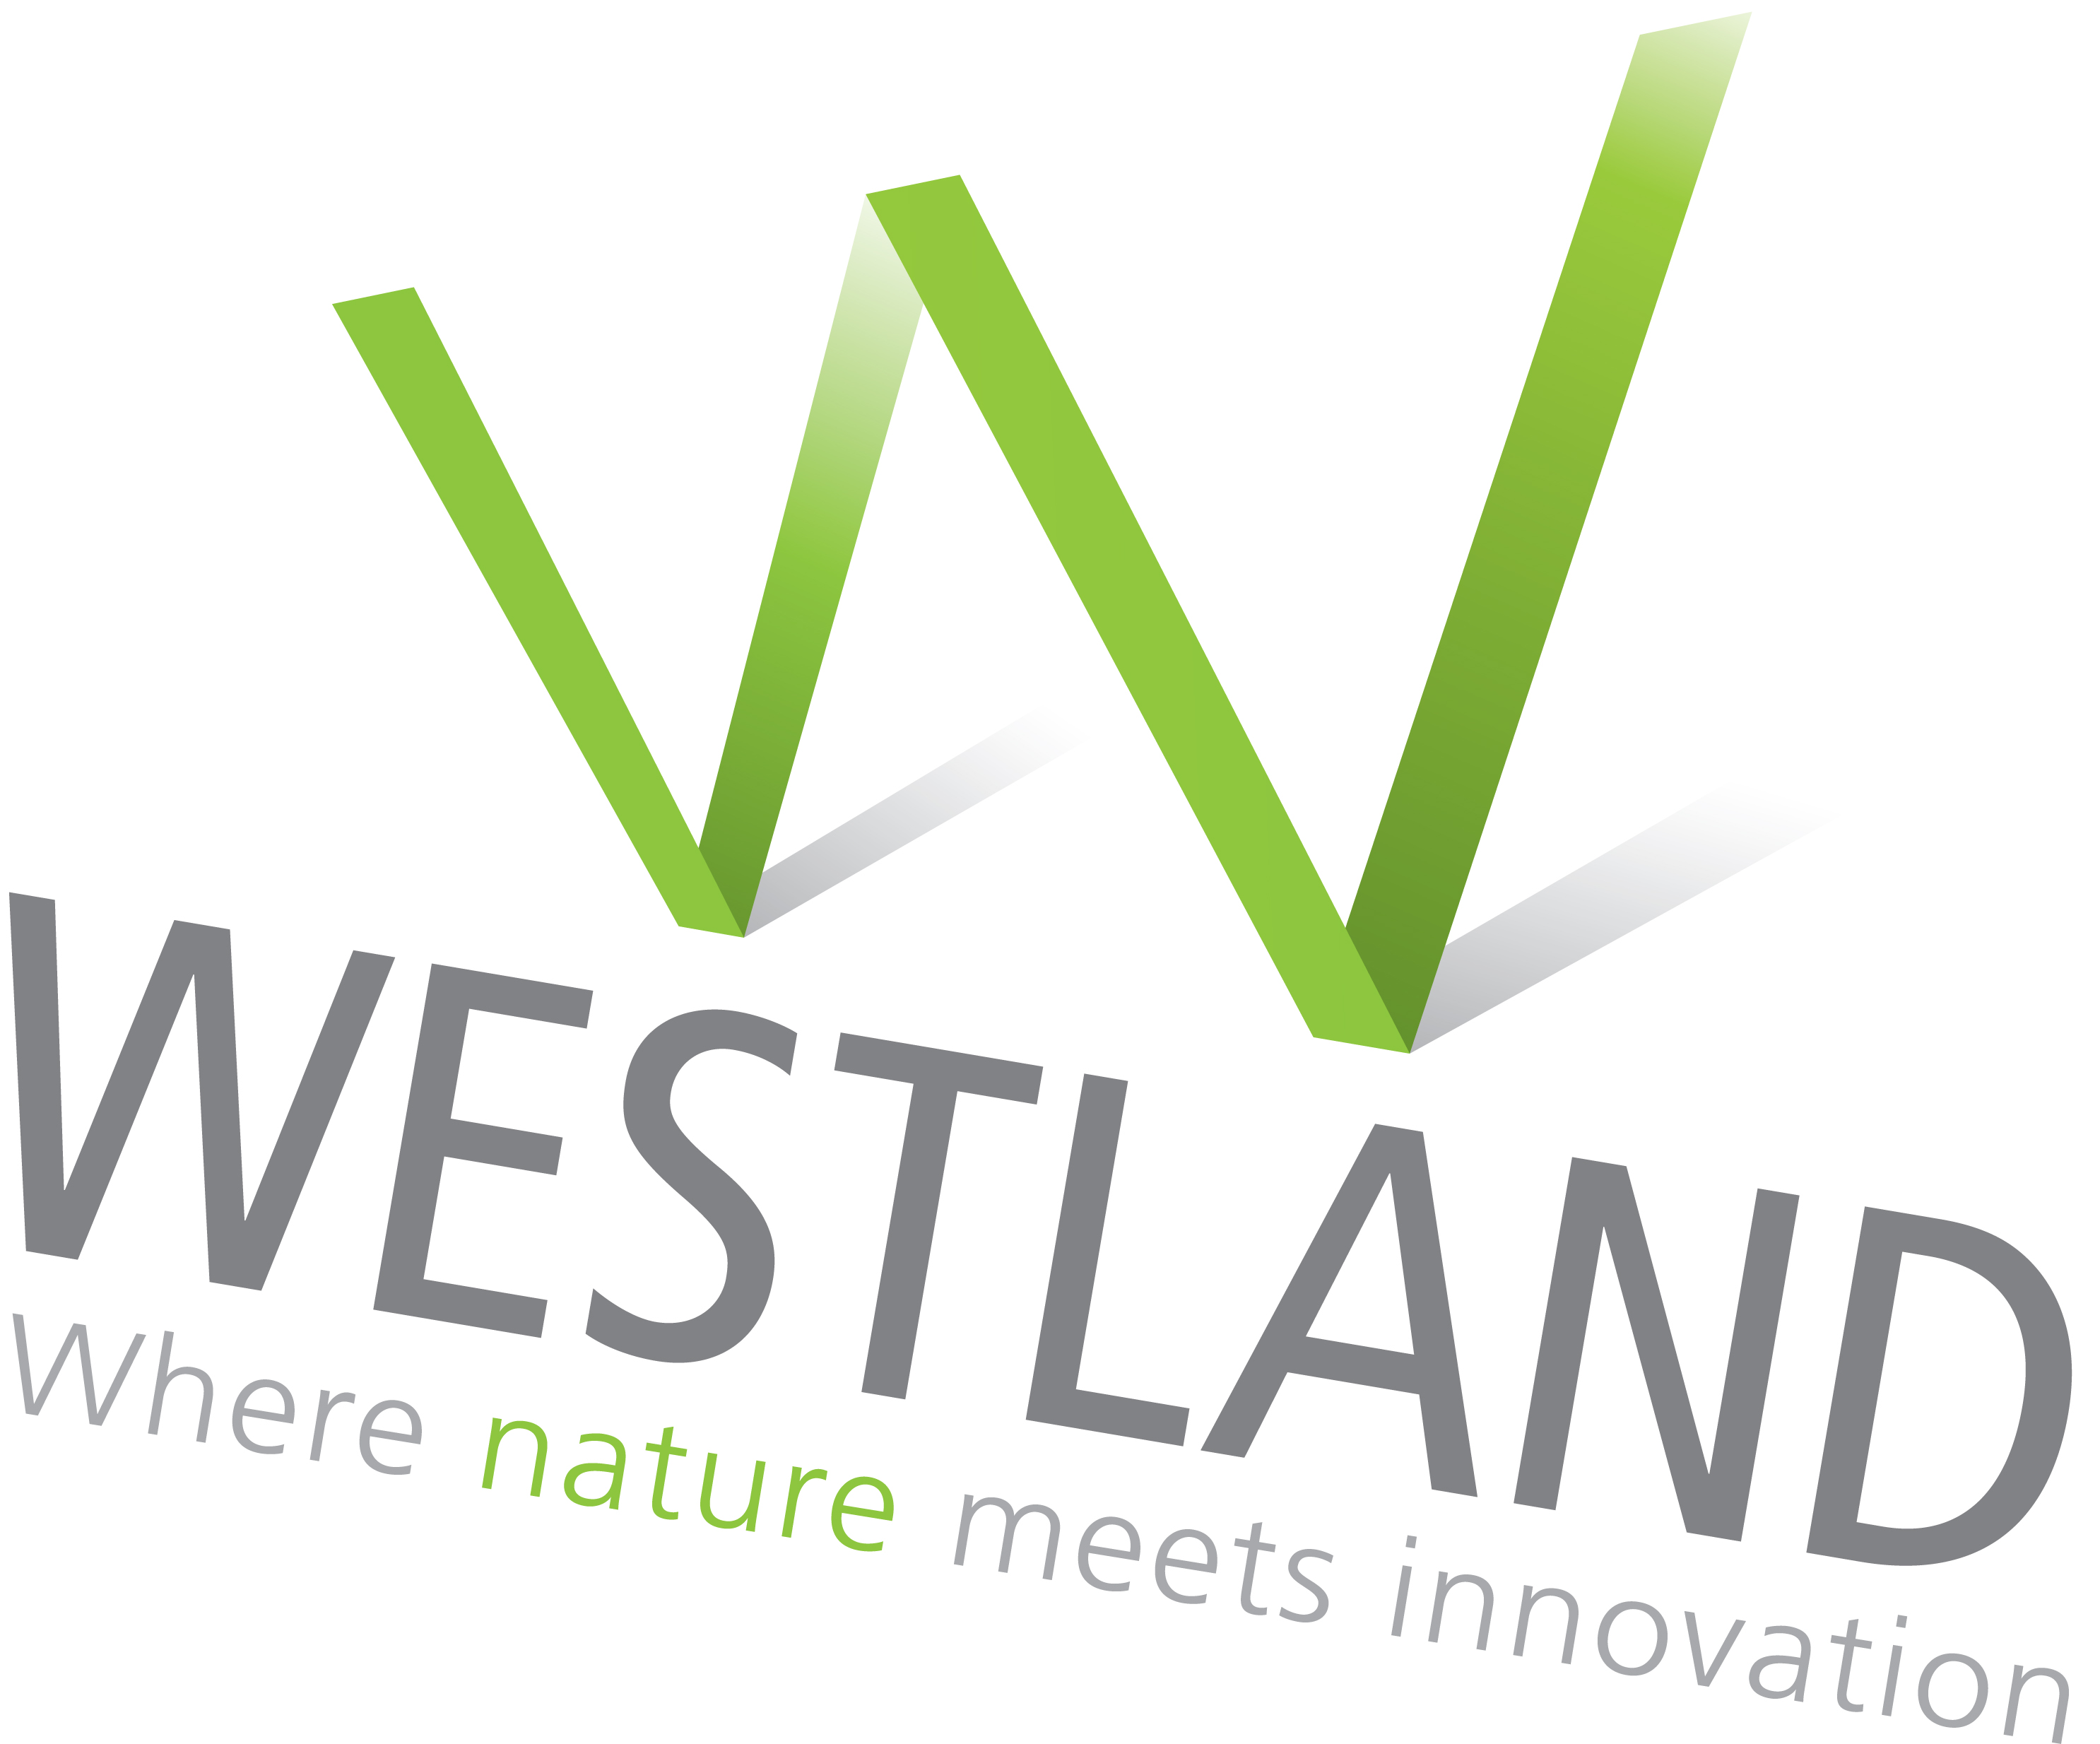 westland groepsrondreizen inspired by westland